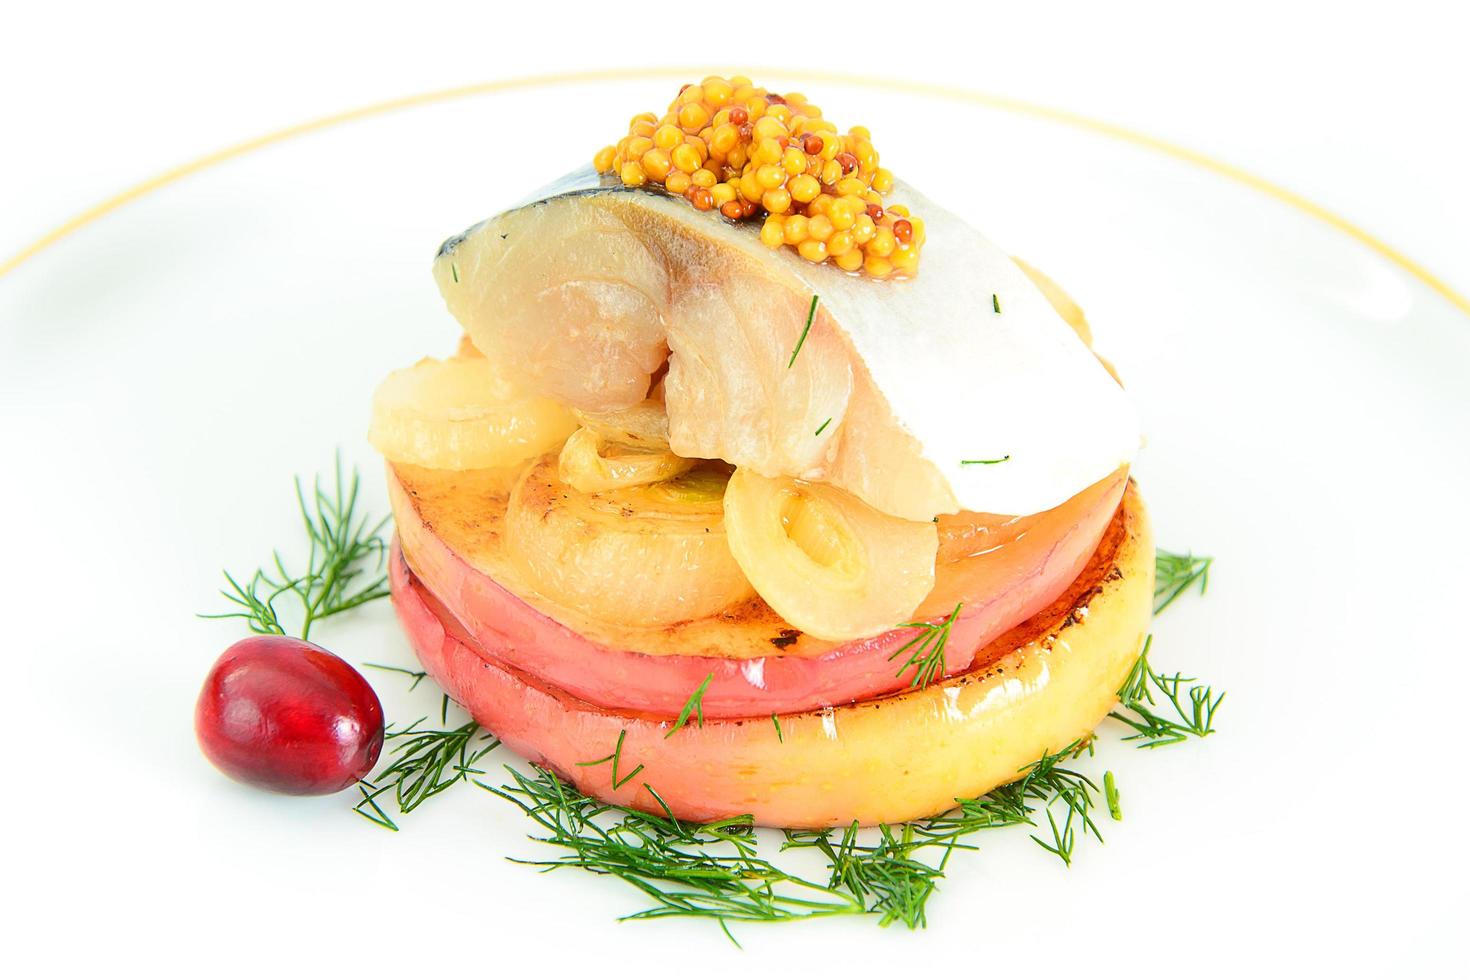 salzmarinierte Makrele mit Apfel und Zwiebel. foto